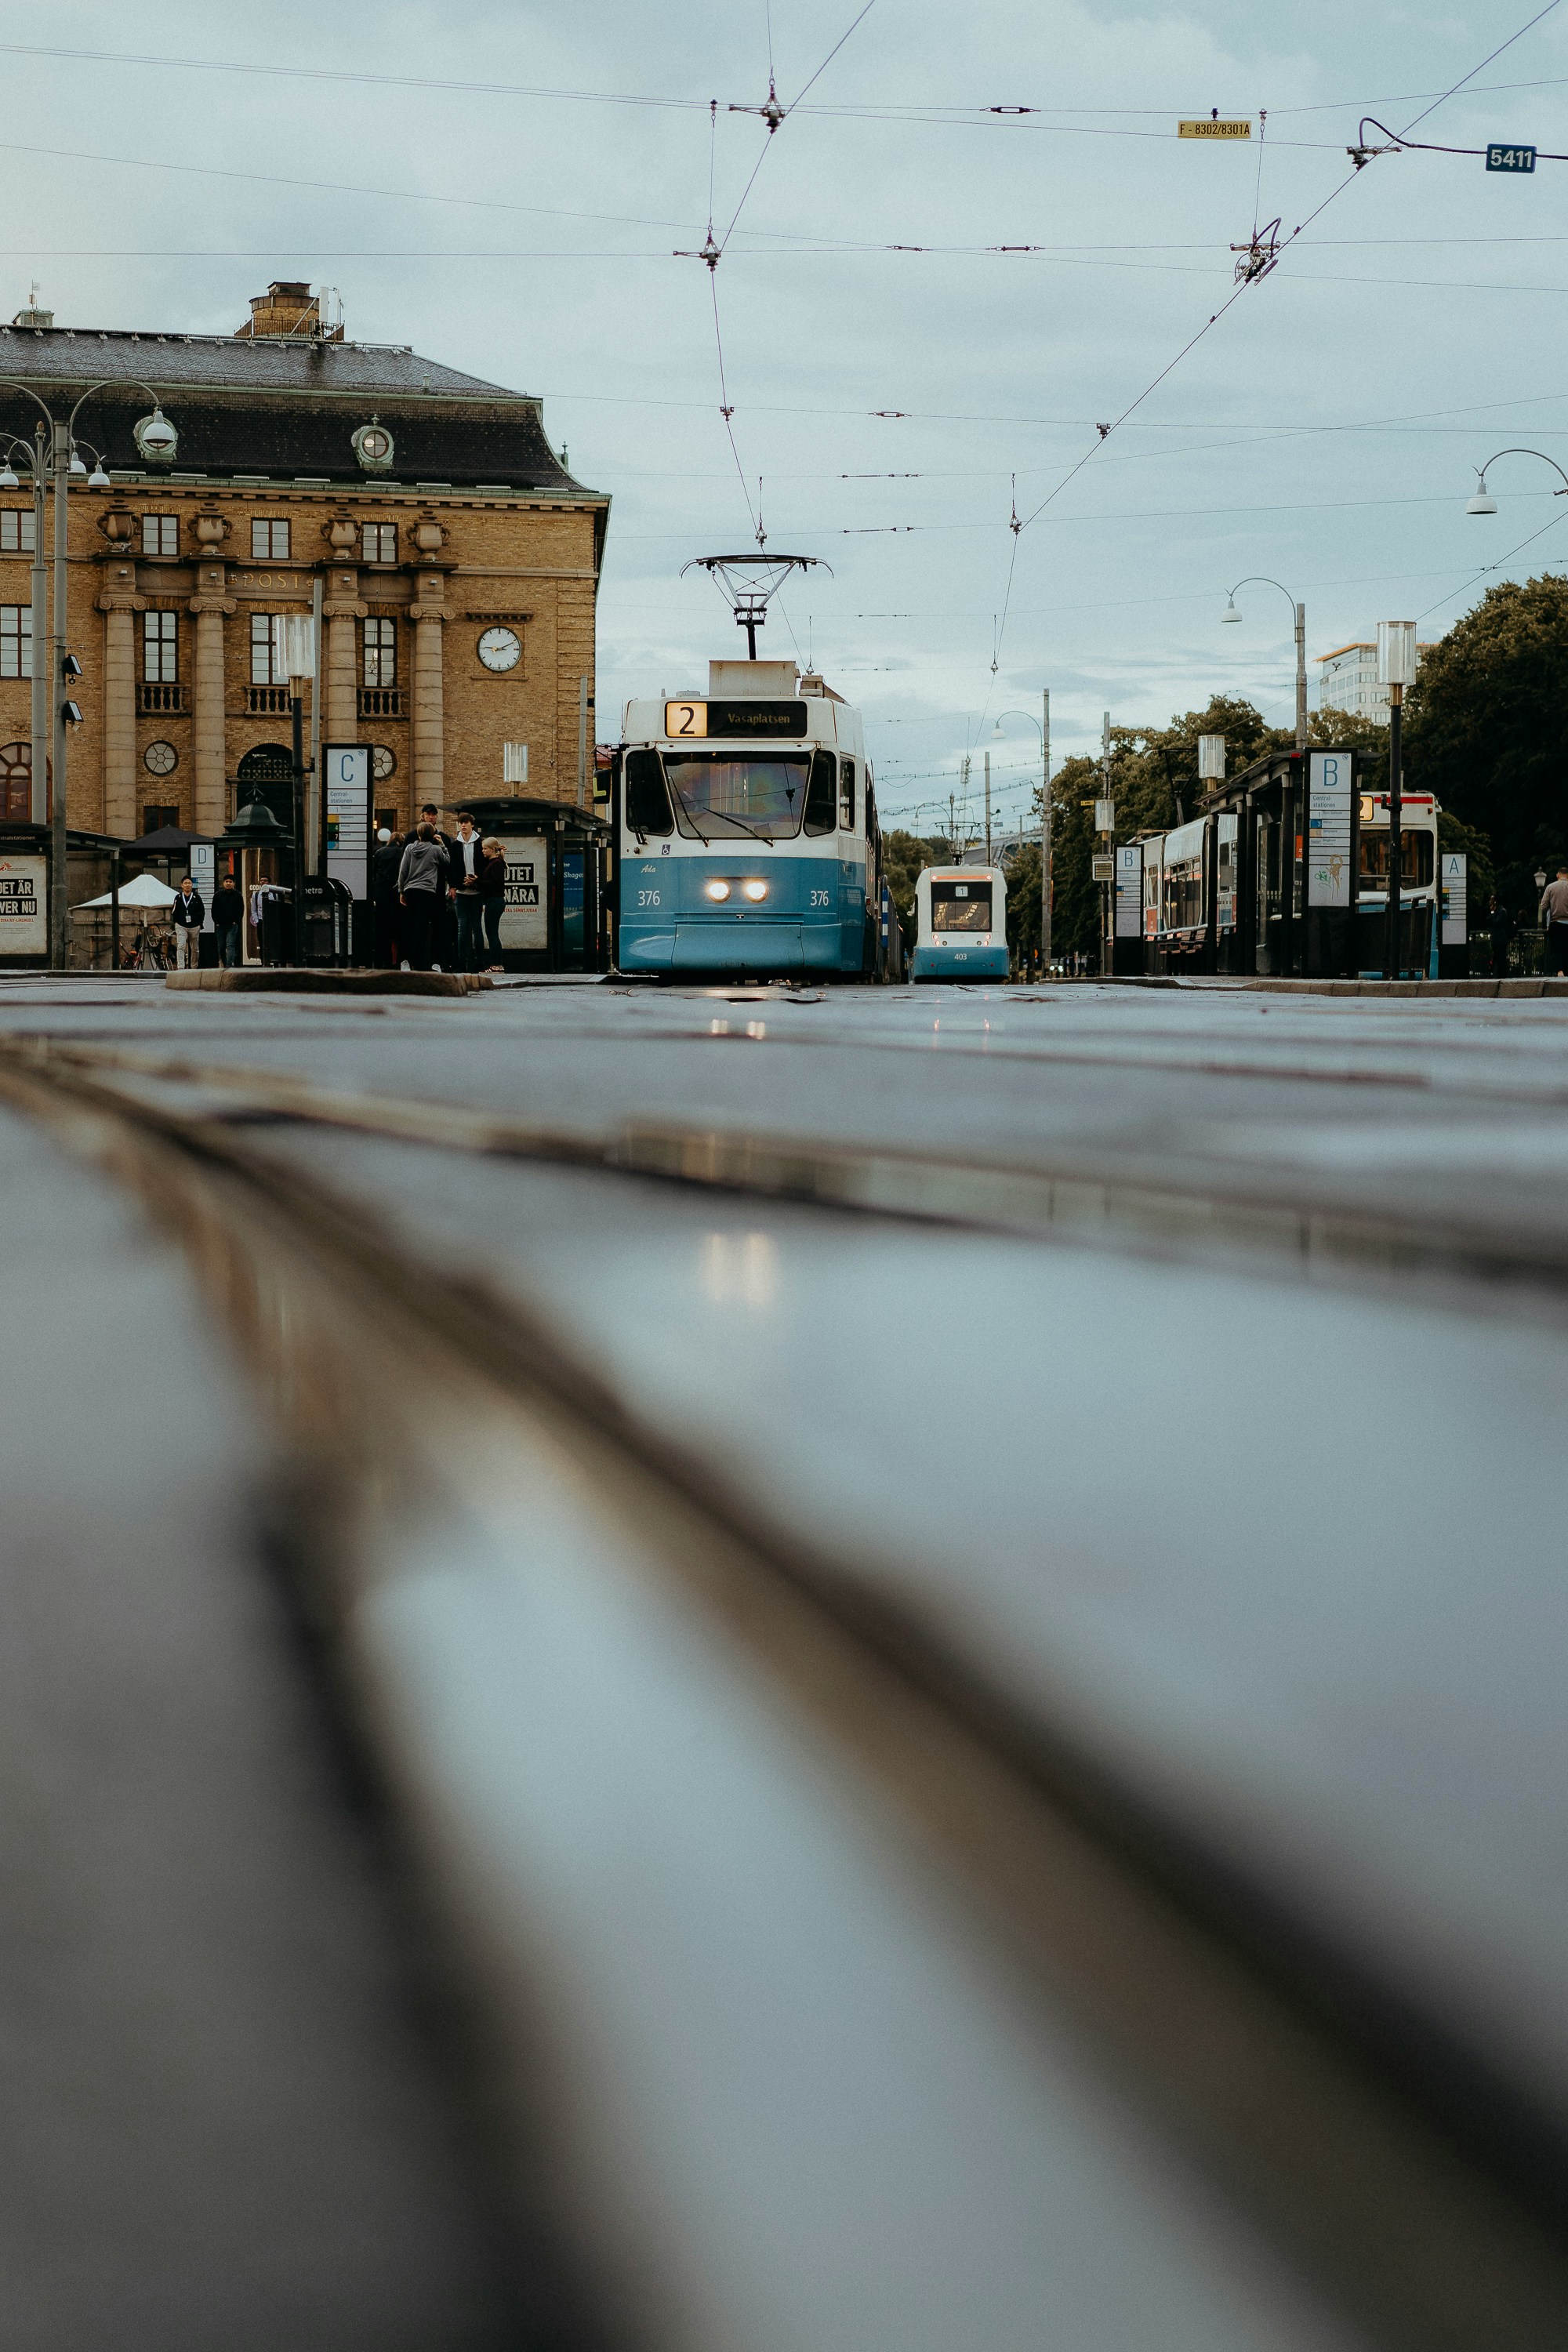 Nobox webbyrå utför webbutveckling för E-handel och WordPress i Göteborgs kommun och inom Västra Götalands län. Bilden visar en spårvagn vid Drottningtorget i centrala Göteborgs stad. Spårvagnen är en symbol för den välkomnande & charmiga tätorten och Sveriges näst största stad på västkusten vid Göta älvs mynning.